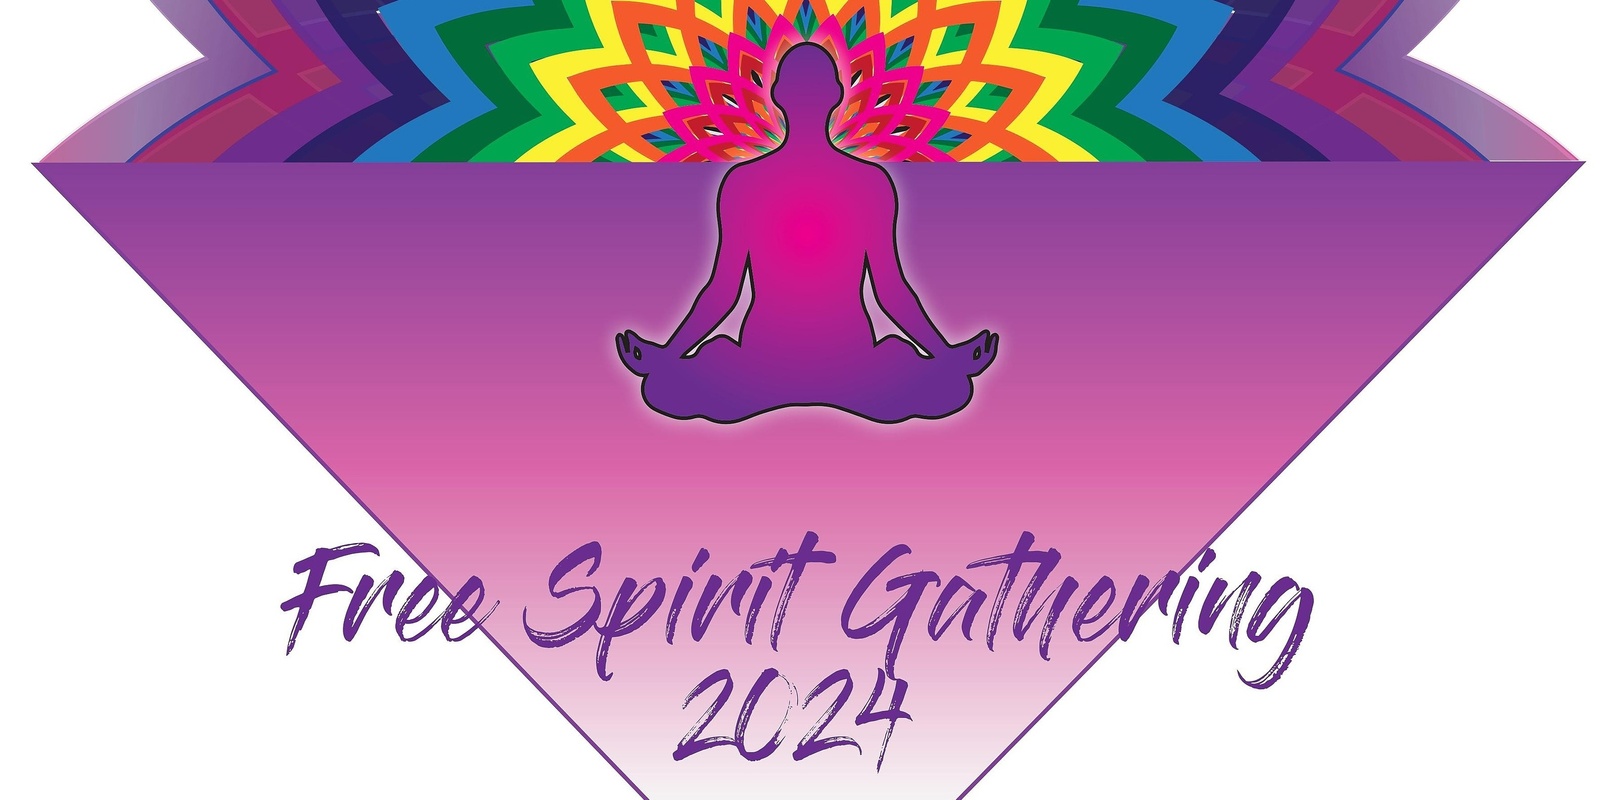 Banner image for Free Spirit Gathering 2024